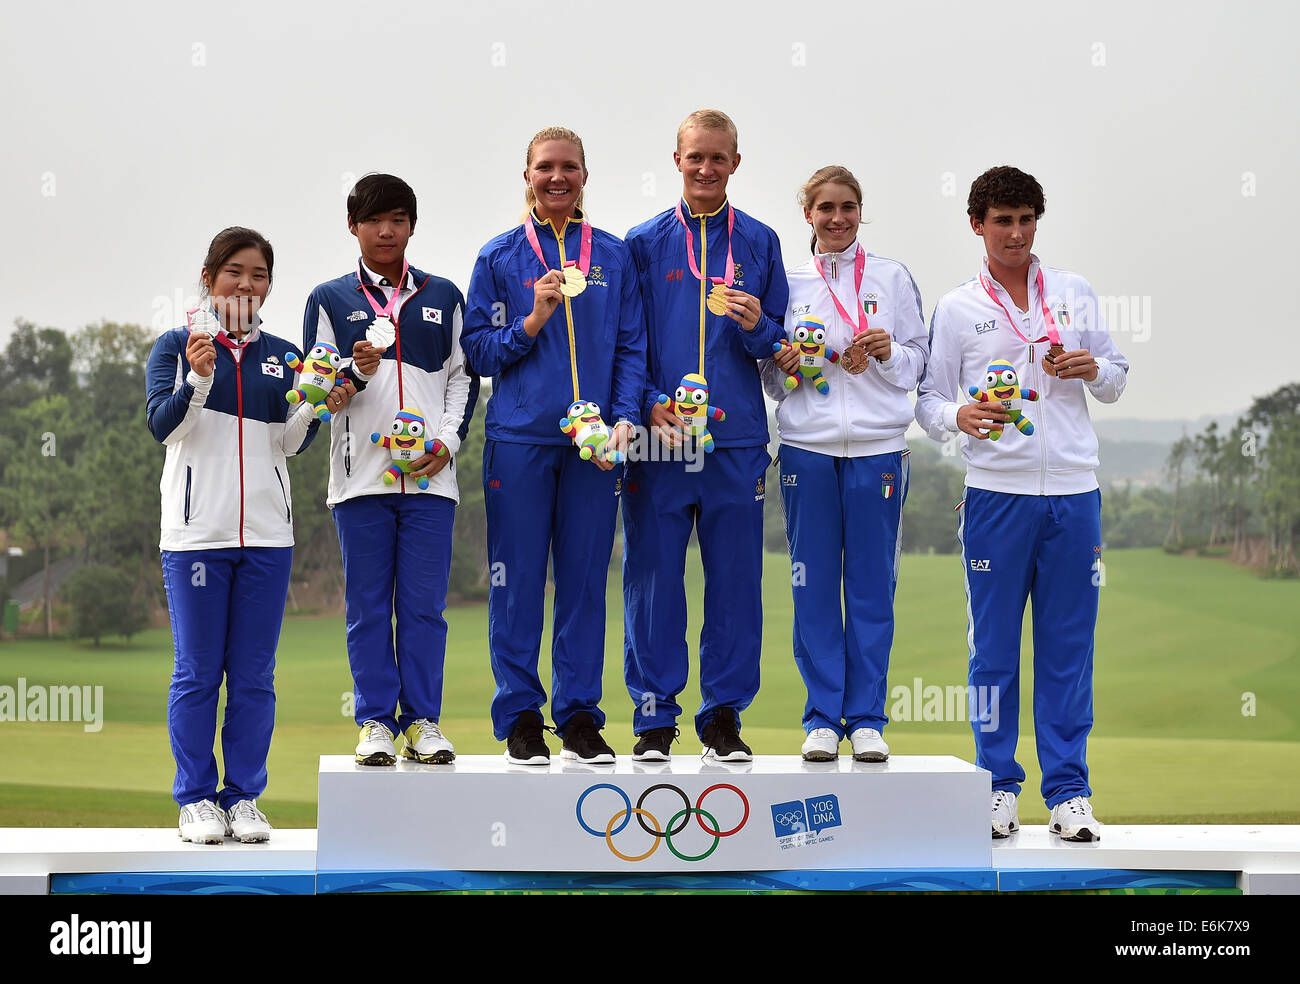 (140826) - Nanjing, Agosto 26, 2014 (Xinhua) -- el medallista de oro Linnea Strom (3ª, L) y Marcus Kinhult (3ª, R) de Suecia, medallista de plata Soyoung Lee (1st, L) y Youm Eun Ho (2nd, L) de Corea del Sur y el medallista de bronce de Virginia Elena Magna (2nd, R) y Renato Paratore de Italia de pie en el podio durante la ceremonia de entrega de los eventos del Equipo Mixto de competición de golf en Nanjing 2014 Juegos Olímpicos de la juventud en la ciudad de Nanjing, provincia de Jiangsu de China oriental, Agosto 26, 2014. (Xinhua/Guo Cheng) (ljr) Foto de stock